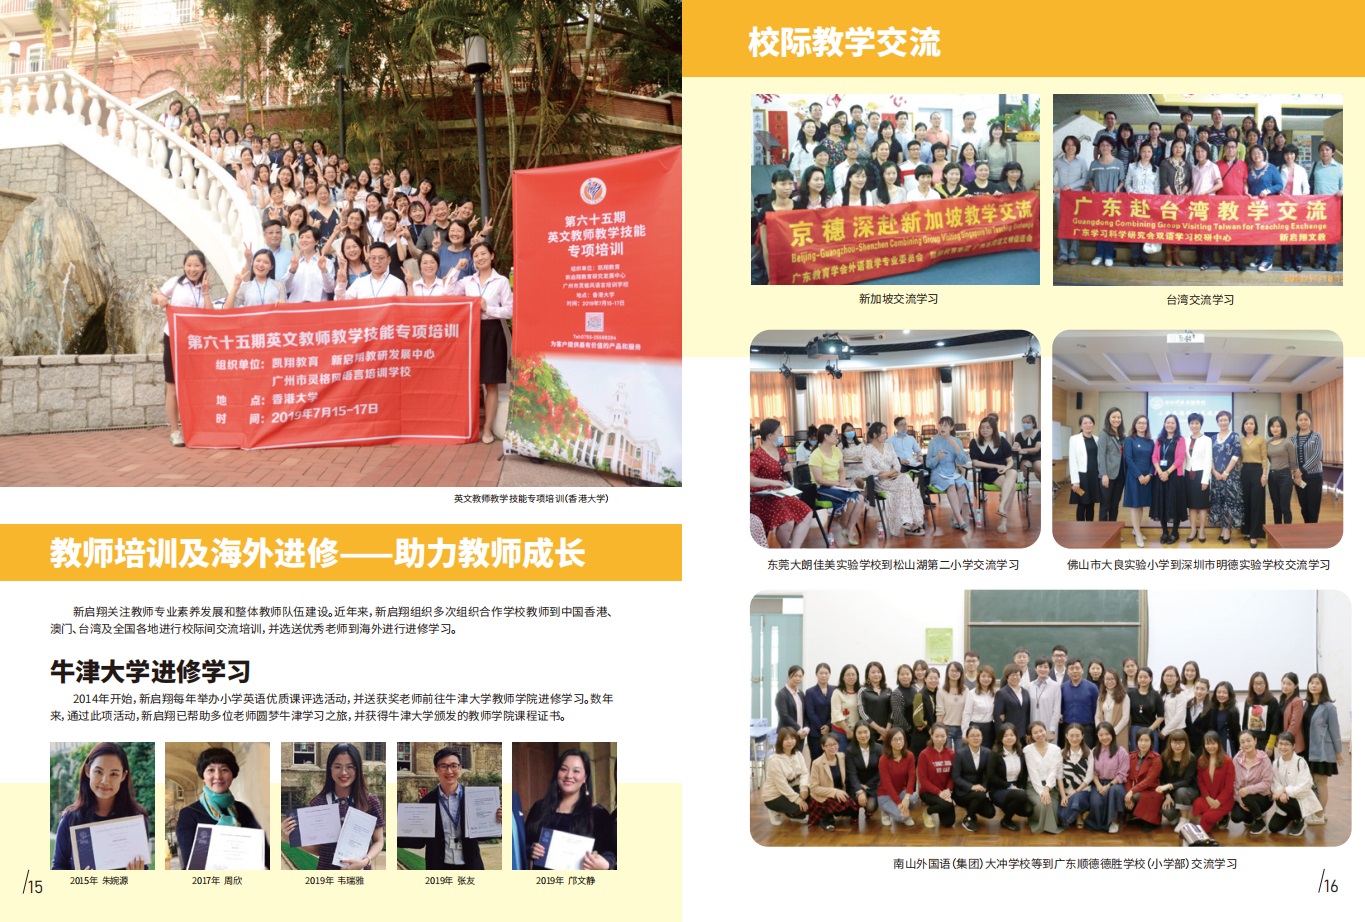 4 新启翔提供英语教师培训及海外进修、校际教学交流